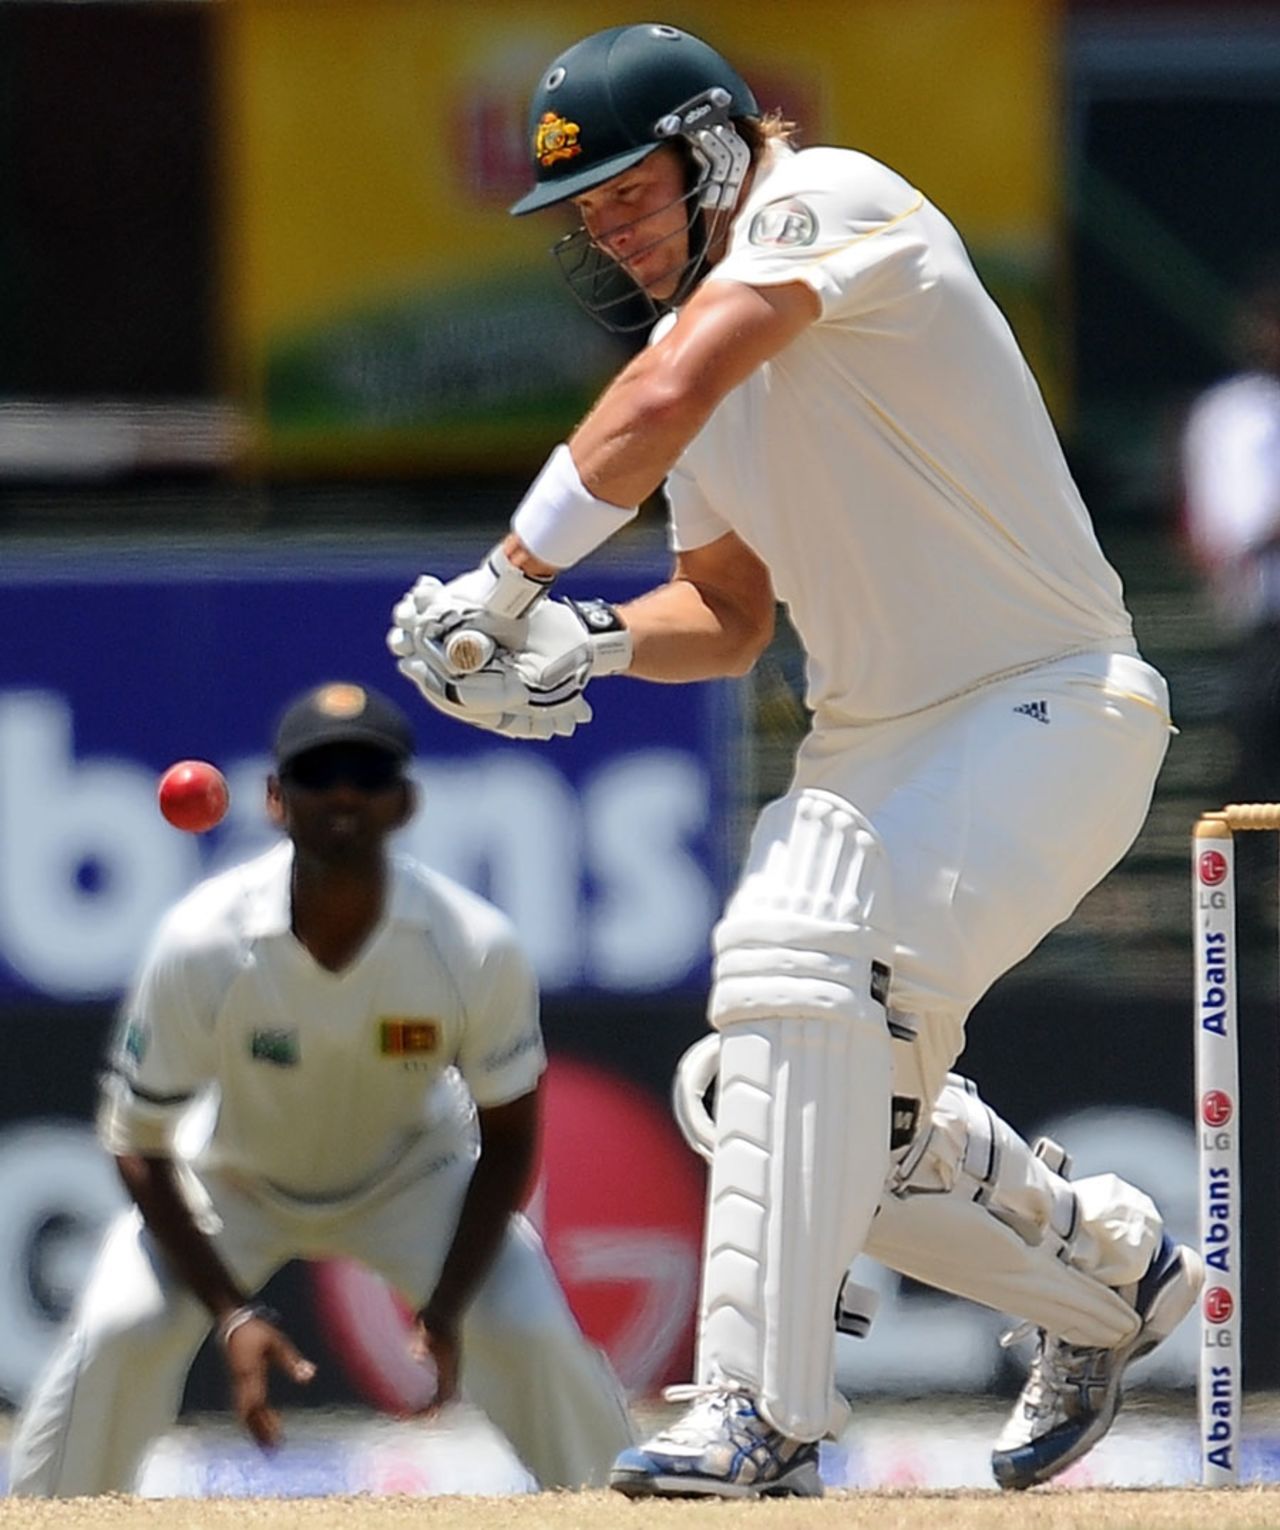 Shane Watson scored 21 before he was dismissed, Sri Lanka v Australia, 3rd Test, SSC, Colombo, 4th day, September 19, 2011